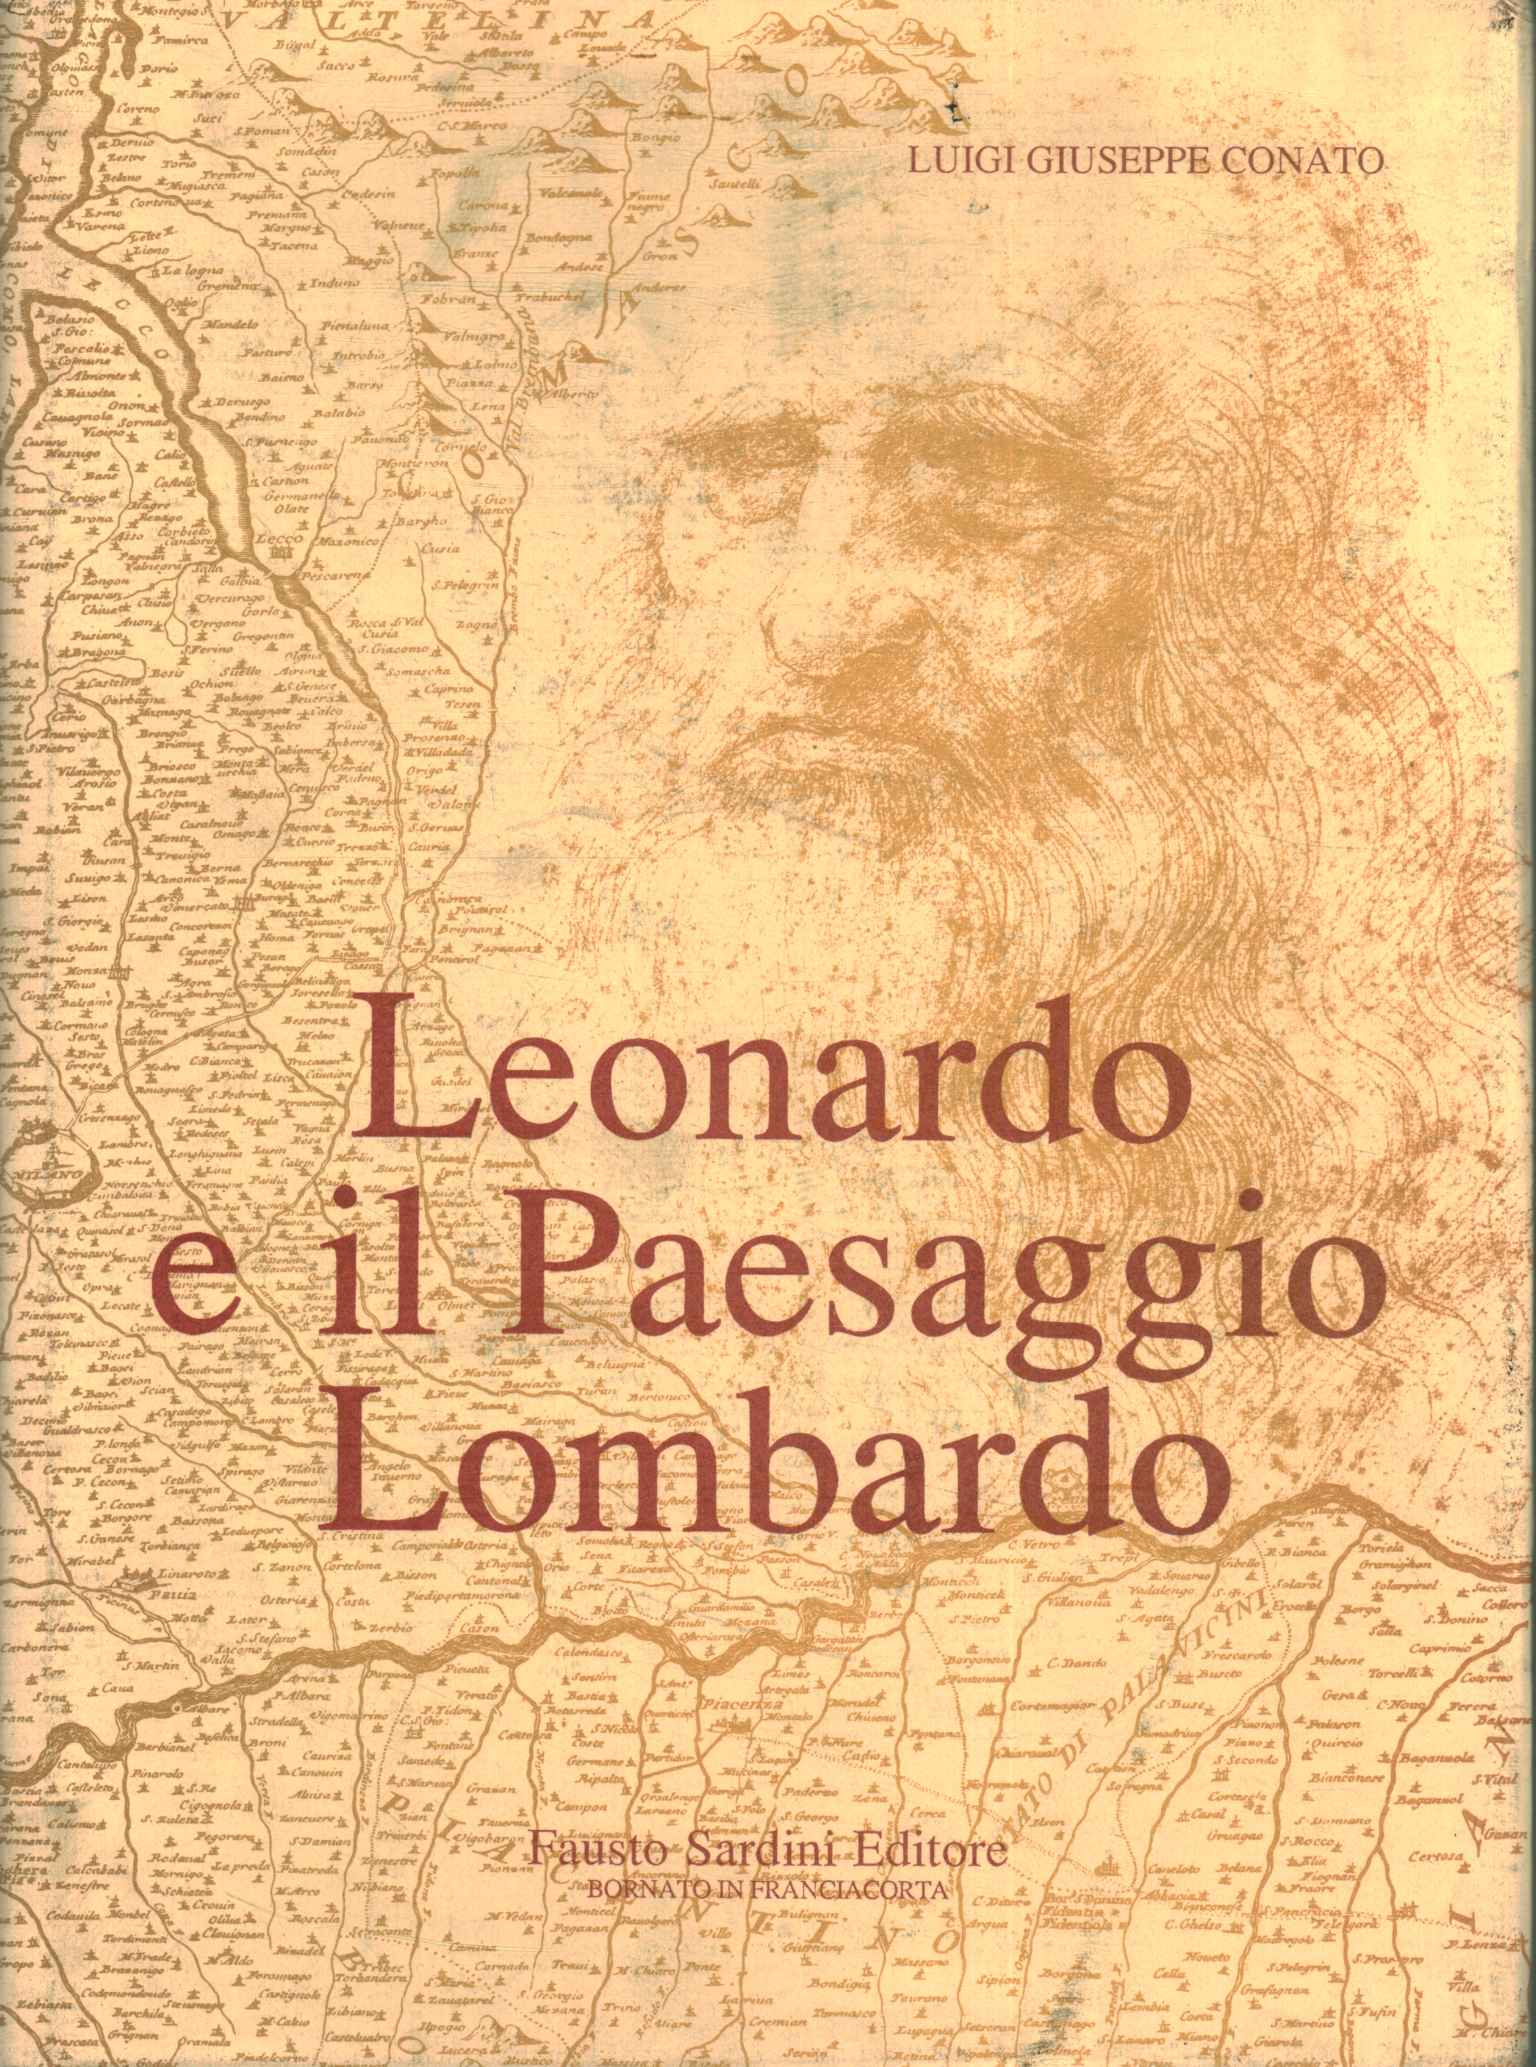 Leonardo y el paisaje lombardo (Tomo%2,Leonardo y el paisaje lombardo (Tomo%2,Leonardo y el paisaje lombardo (Tomo%2,Leonardo y el paisaje lombardo (Tomo%2)